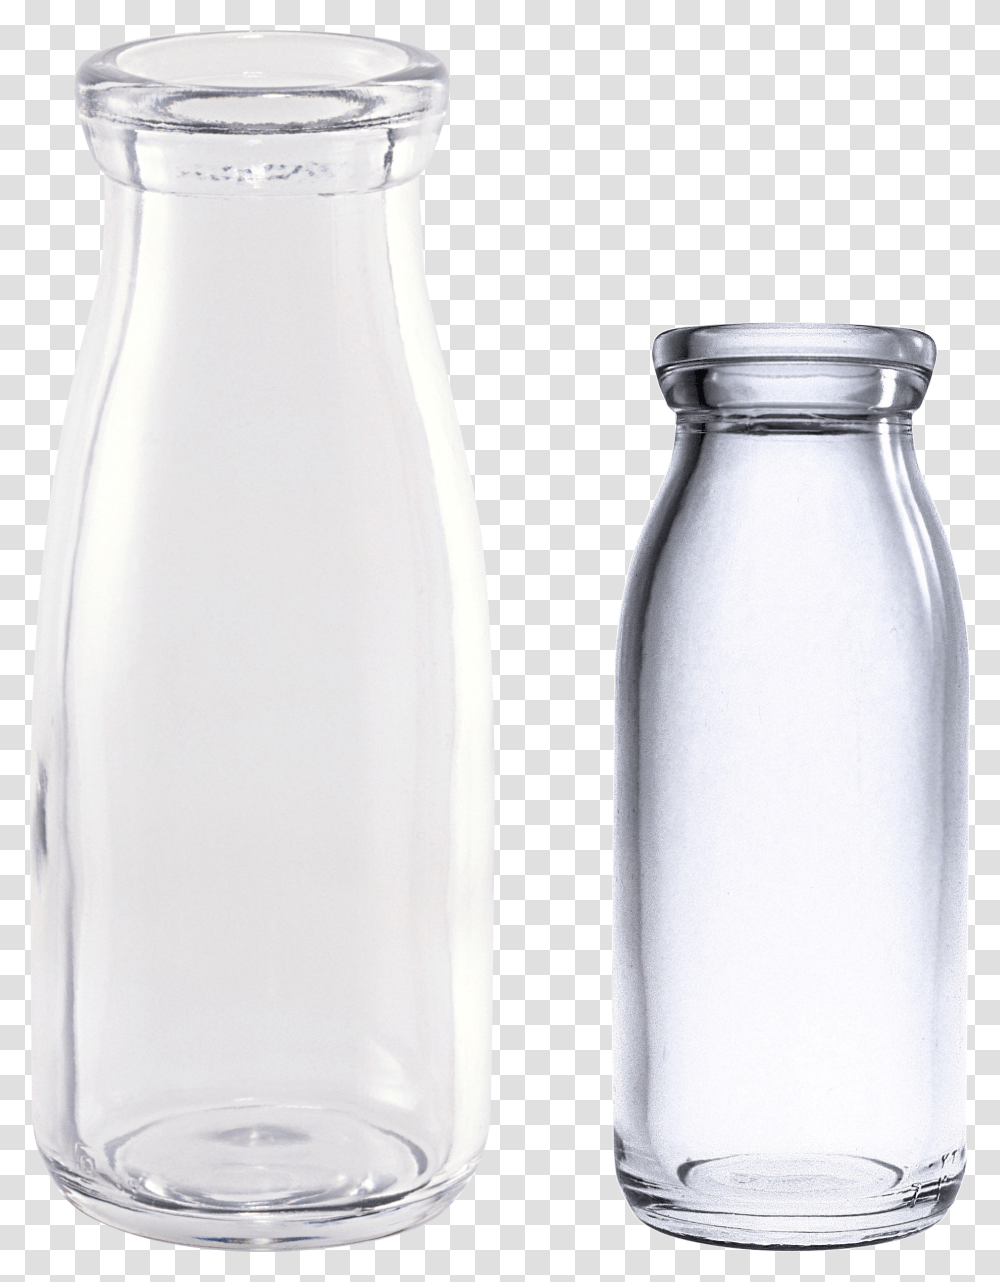 Empty Glass Bottles, Shaker, Milk, Beverage, Drink Transparent Png